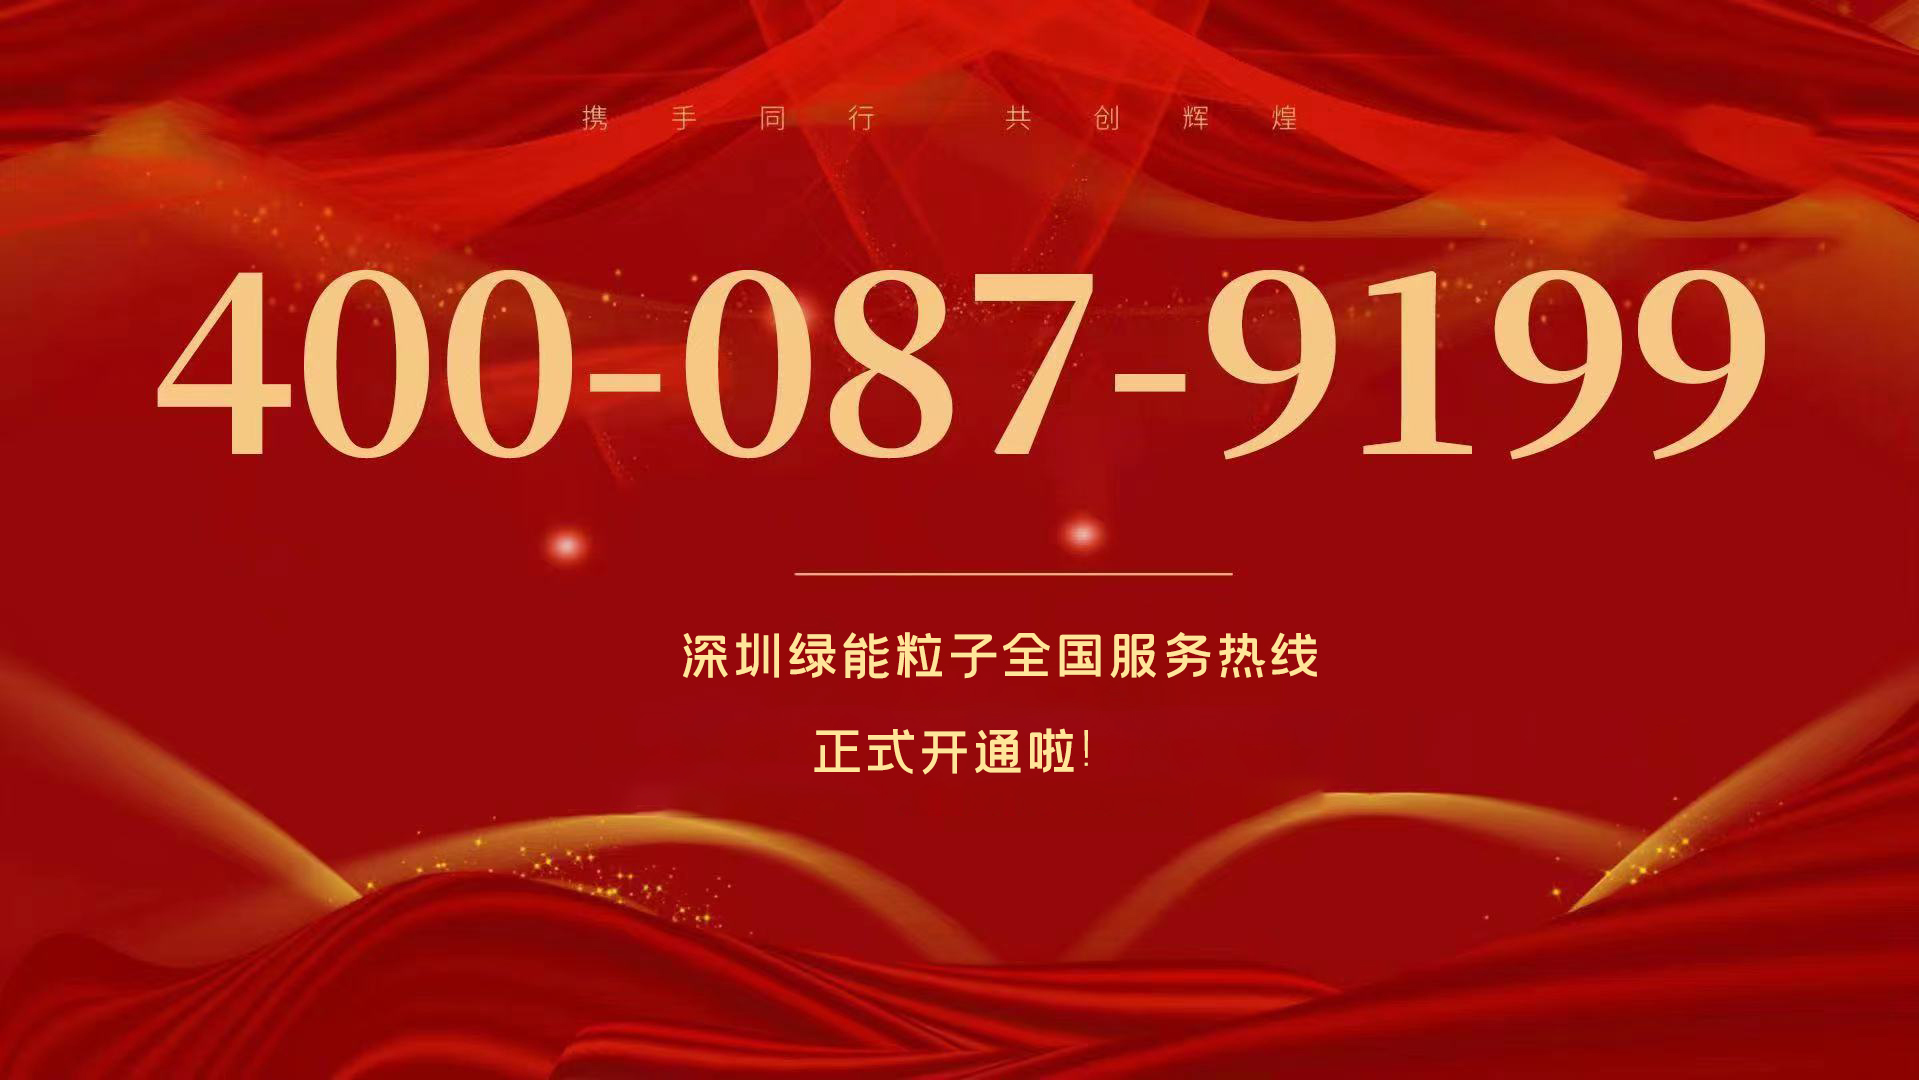  深圳永利3044官网唯一天下效劳热线400-087-9199正式开通啦！  